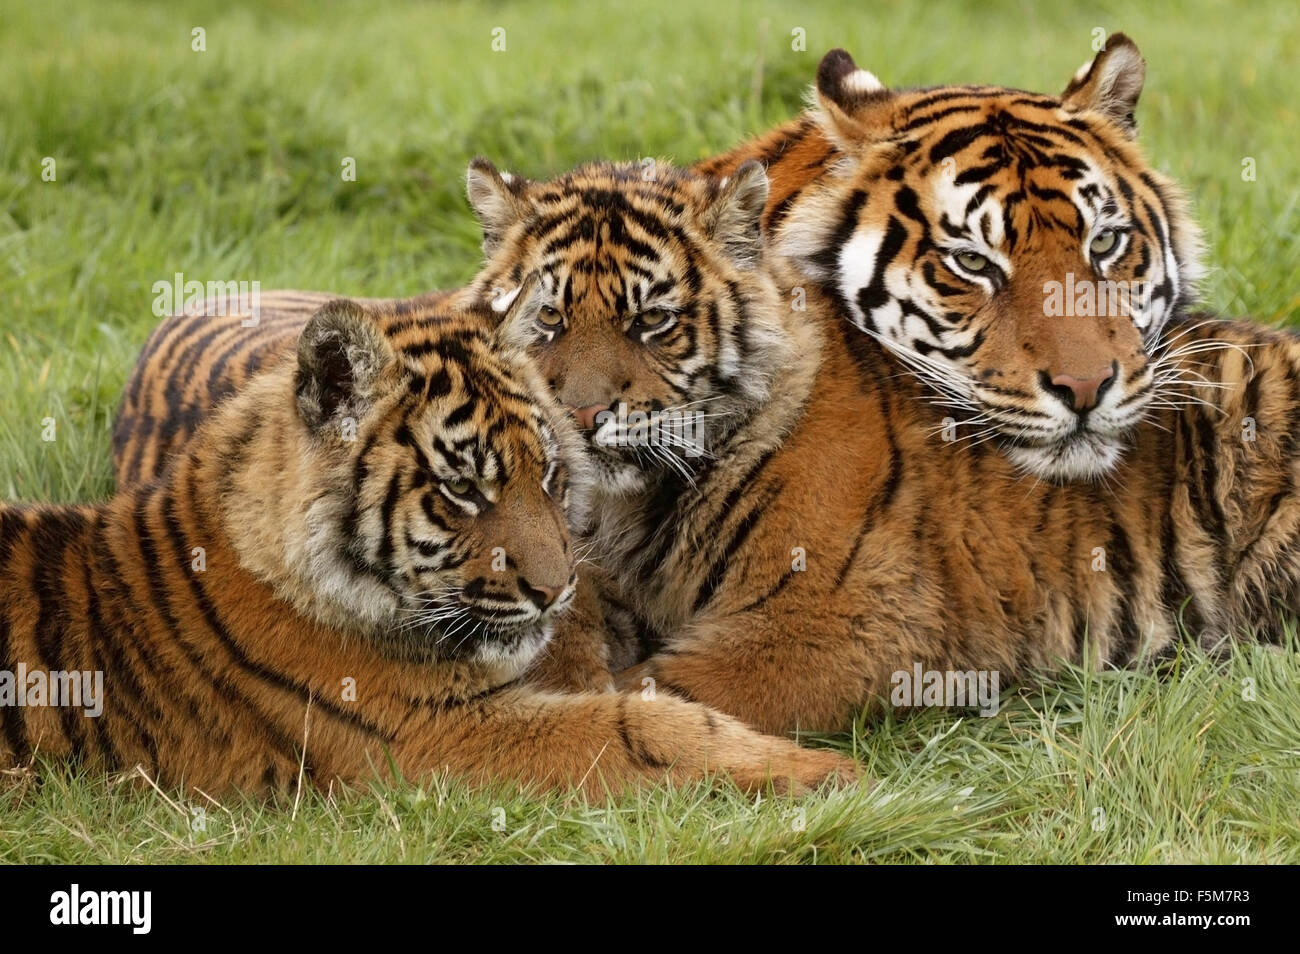 Sumatran Tiger, panthera tigris sumatrae, Mother with Cub Stock Photo